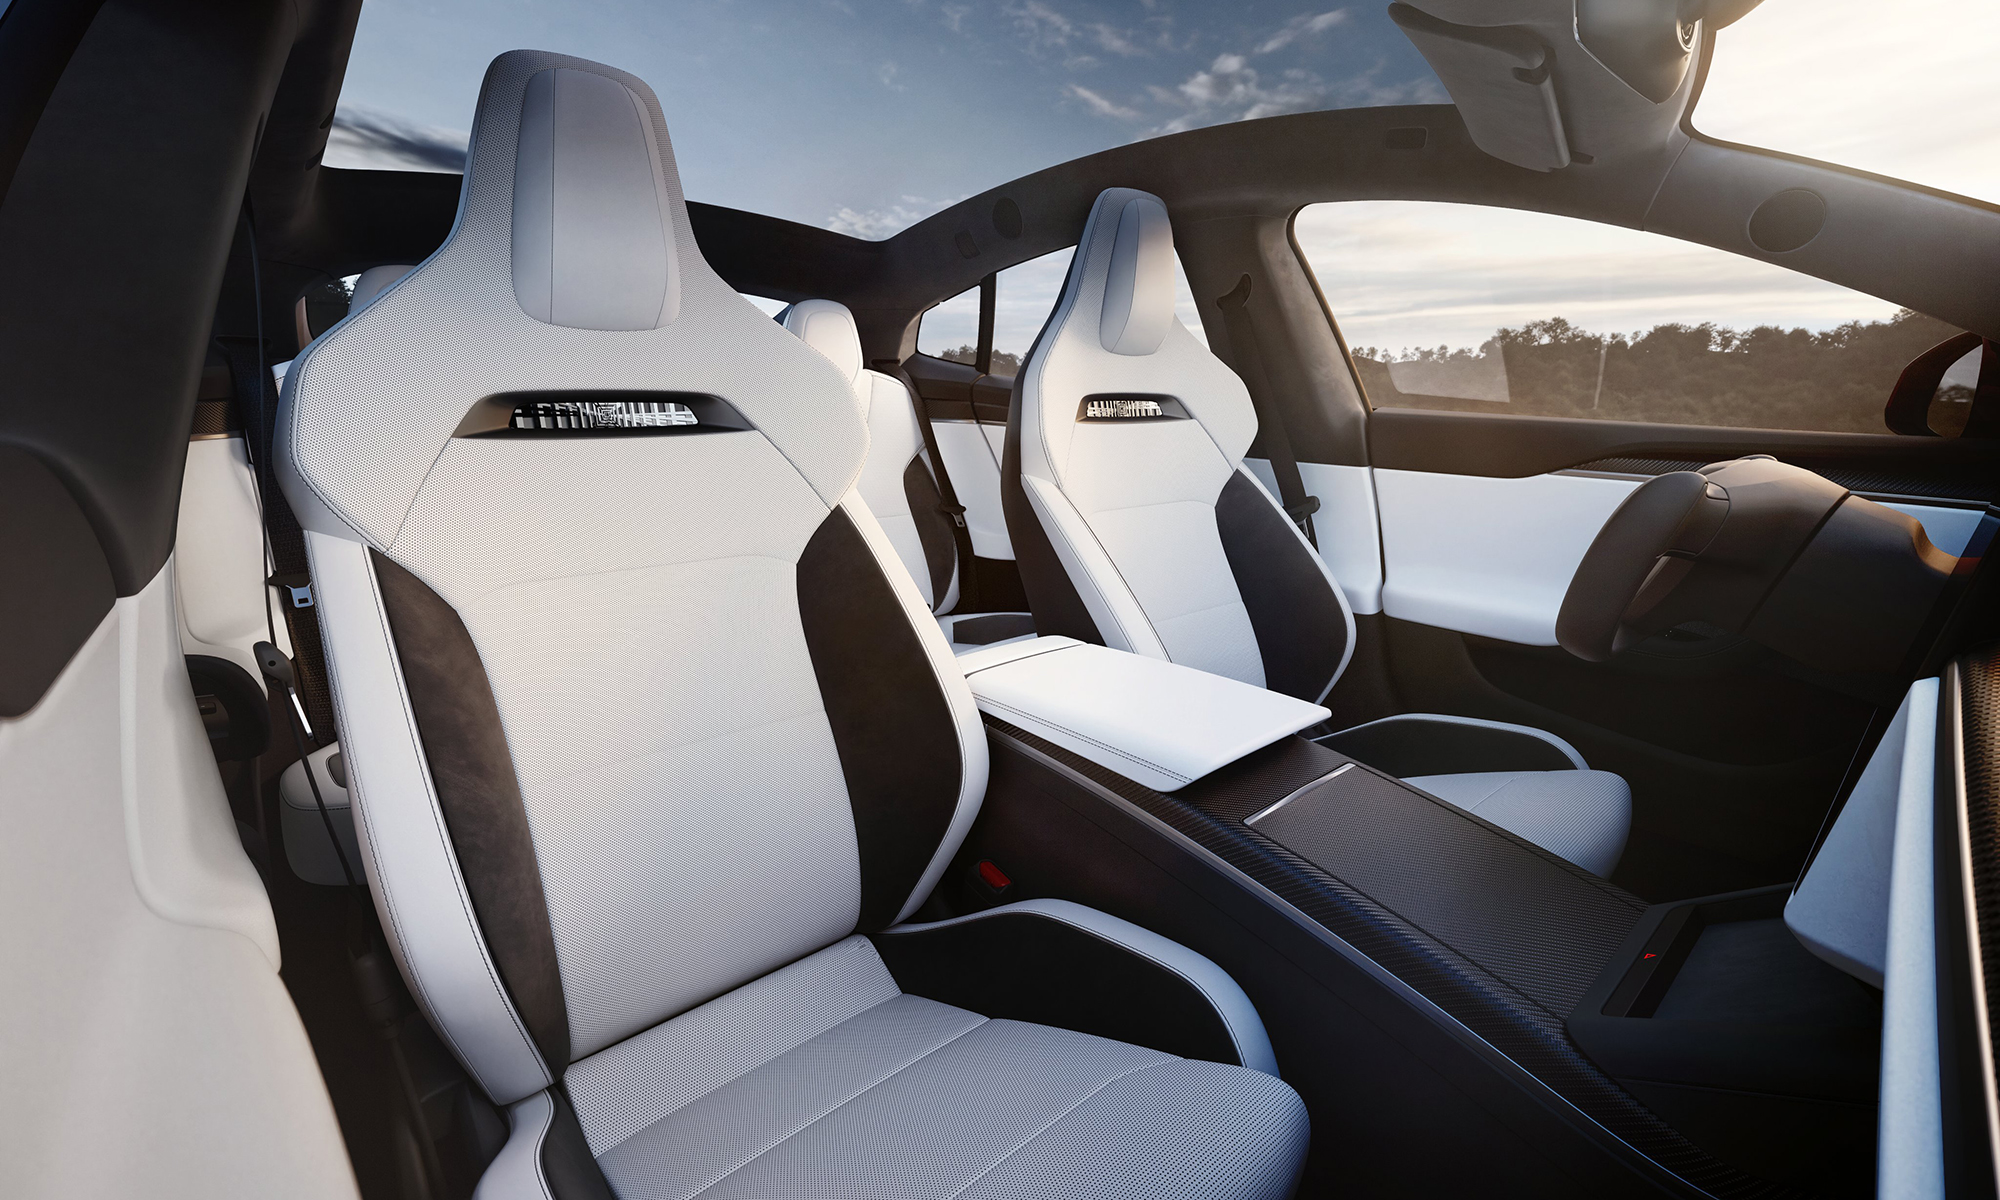 Los nuevos asientos deportivos del Tesla Model S Plaid se equiparán de serie en esta versión.